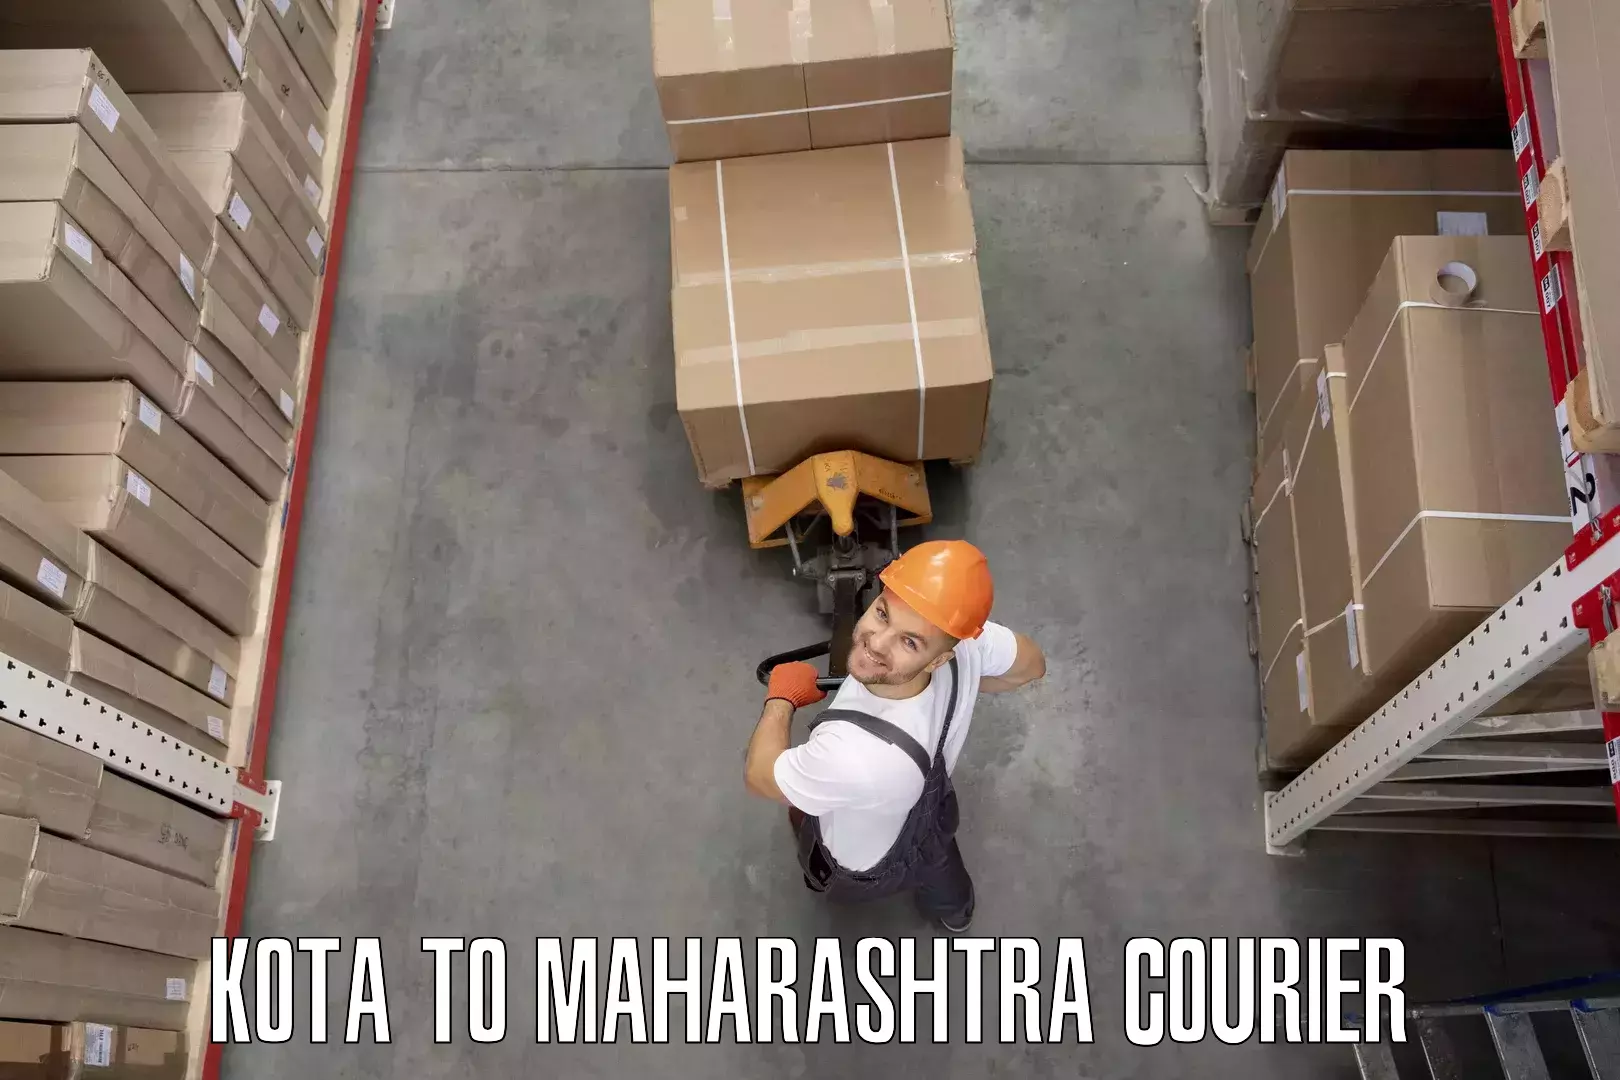 Reliable moving assistance Kota to Maharashtra